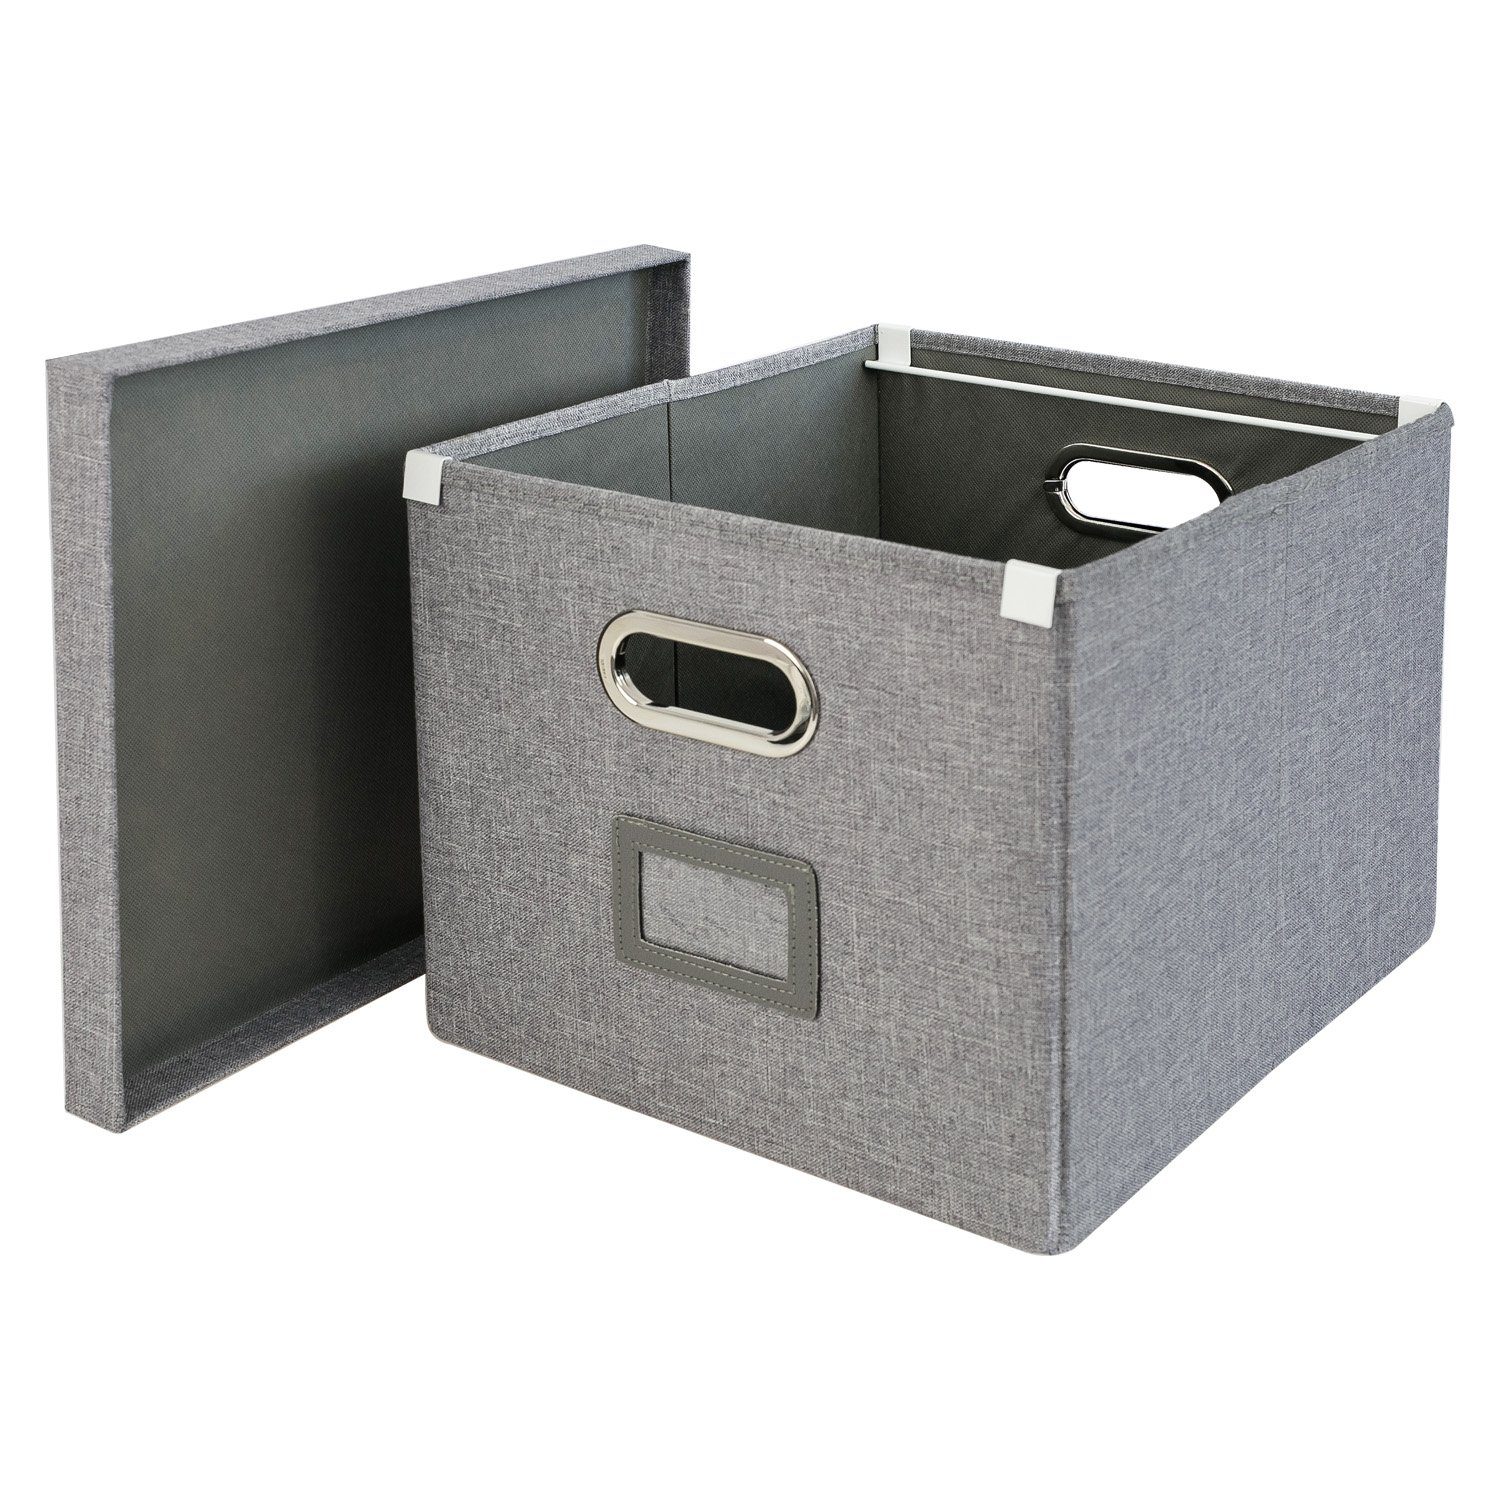 HMF Allzweckkorb dekorative faltbare Aufbewahrungsbox, praktischer Dekokorb für Kallax Regal, 33x37,5x28 cm